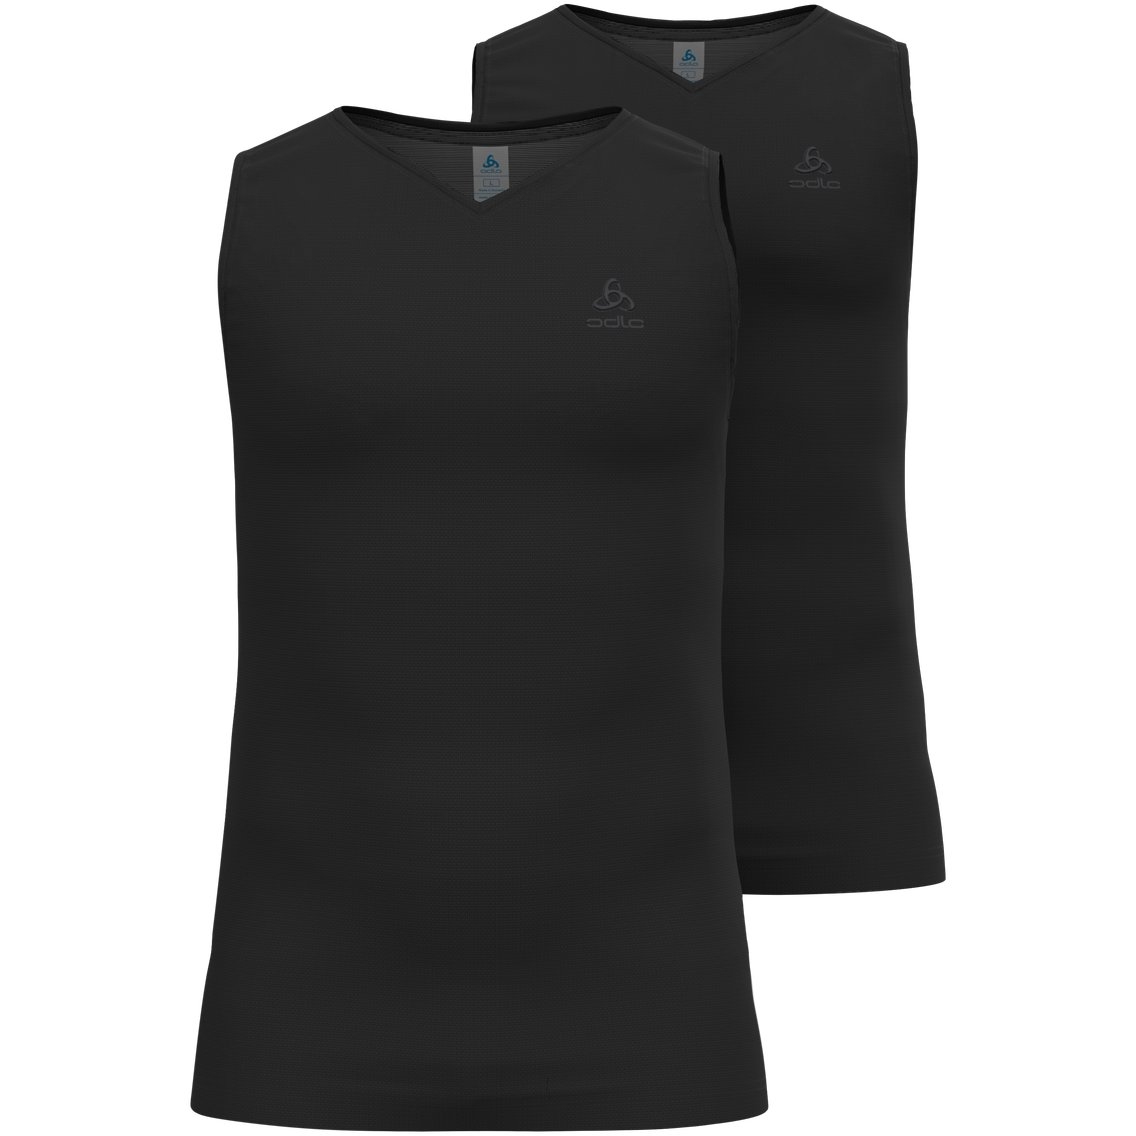 Produktbild von Odlo Active Everyday Eco V-Neck Ärmelloses Unterhemd Herren - Doppelpack - schwarz